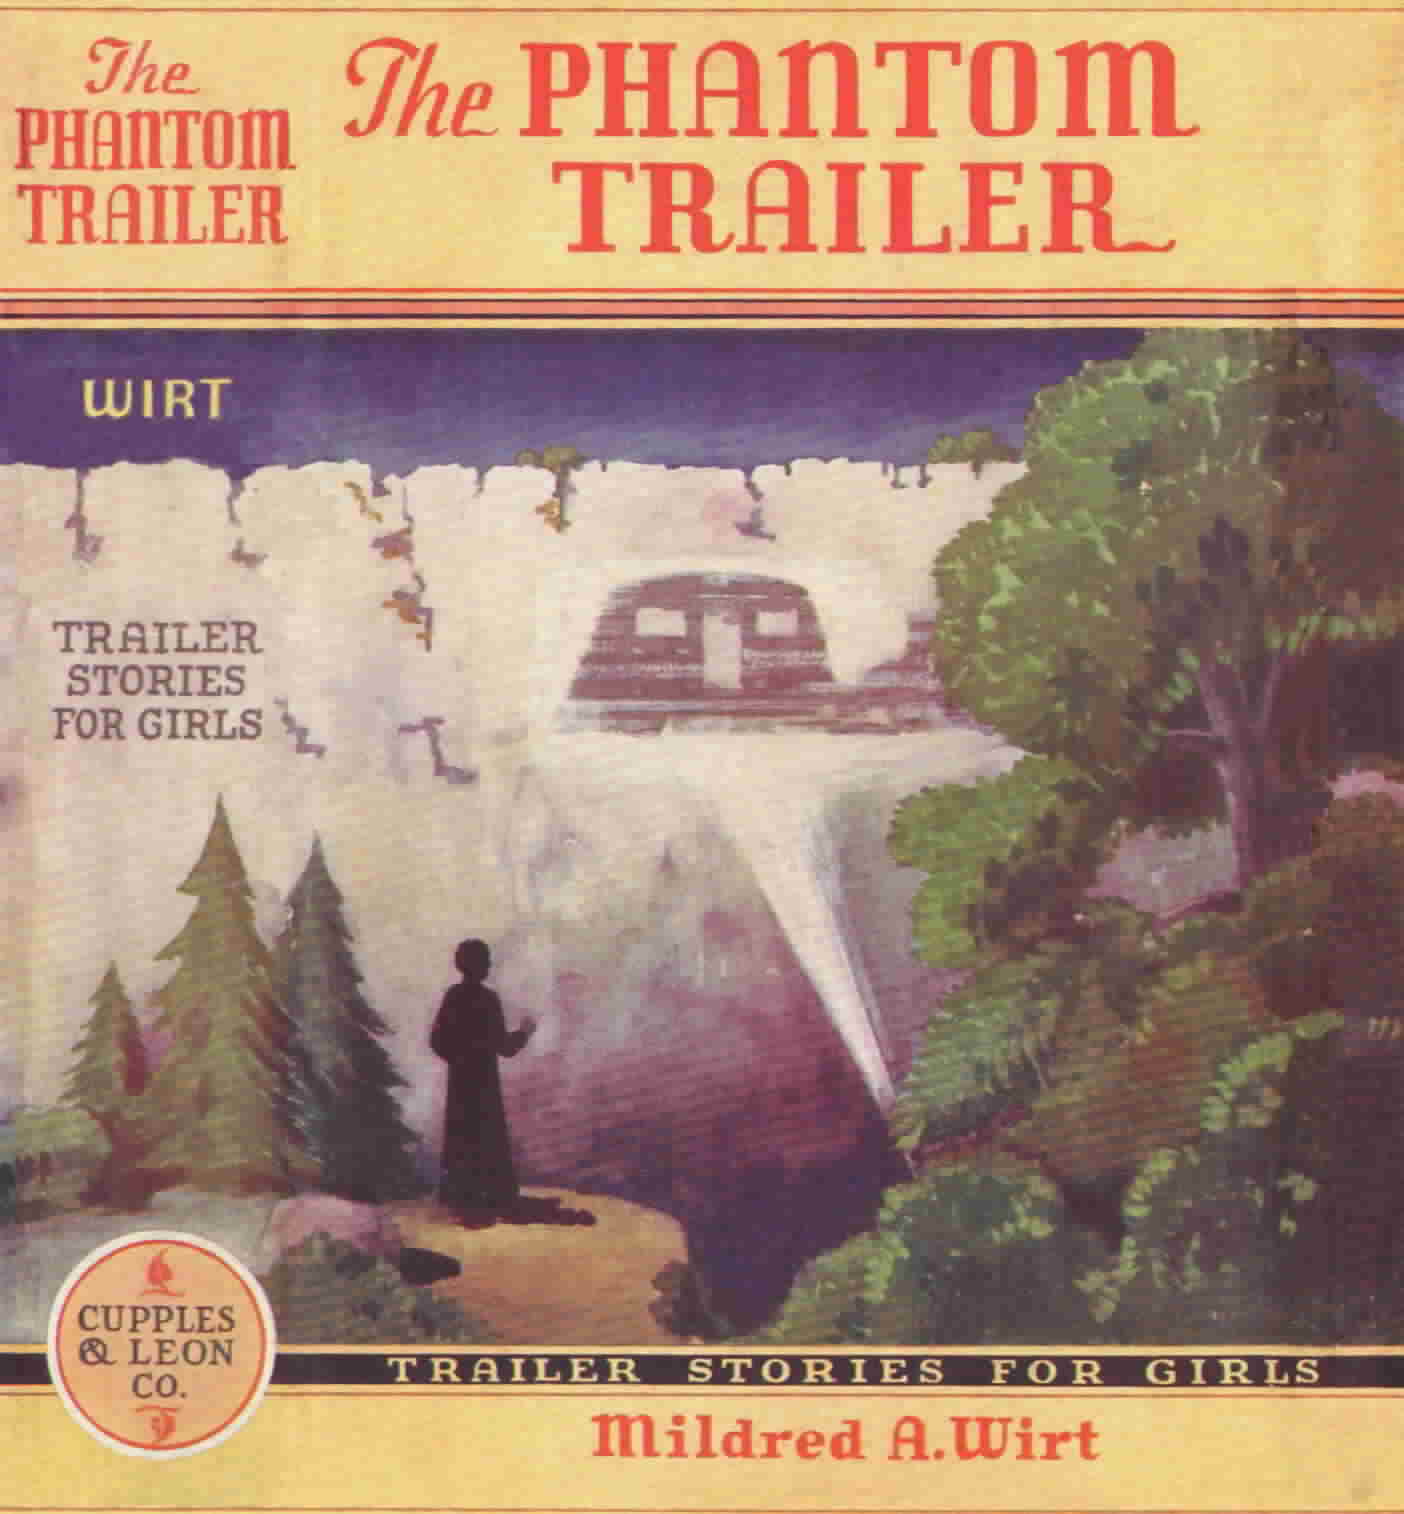 The Phantom Trailer